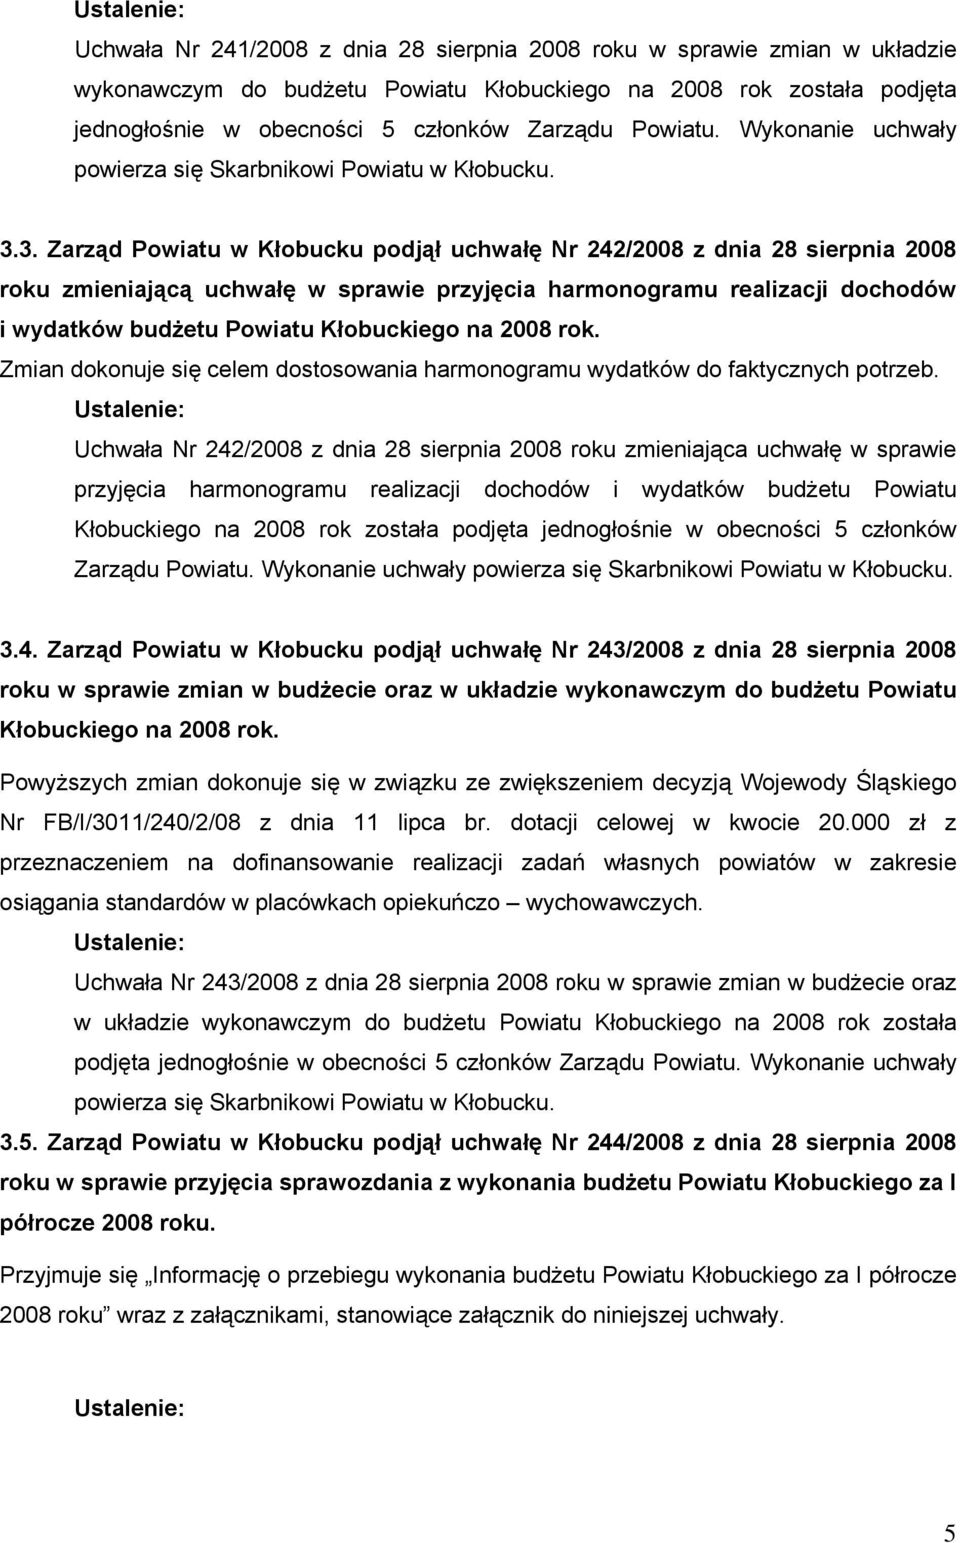 3. Zarząd Powiatu w Kłobucku podjął uchwałę Nr 242/2008 z dnia 28 sierpnia 2008 roku zmieniającą uchwałę w sprawie przyjęcia harmonogramu realizacji dochodów i wydatków budżetu Powiatu Kłobuckiego na